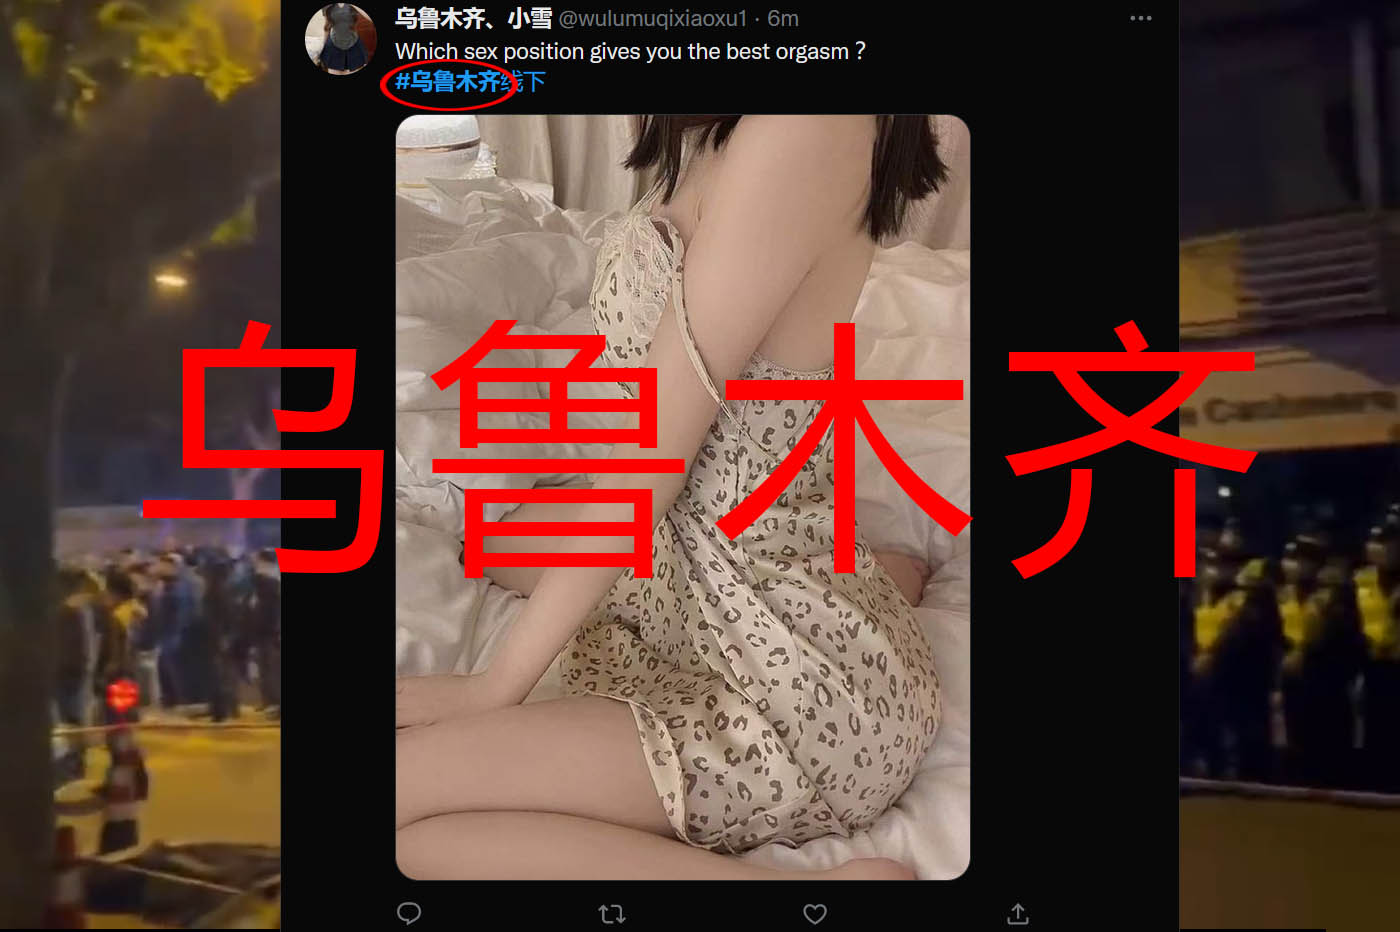 Le gouvernement chinois utilise du porno pour invisibiliser les manifestations sur Twitter